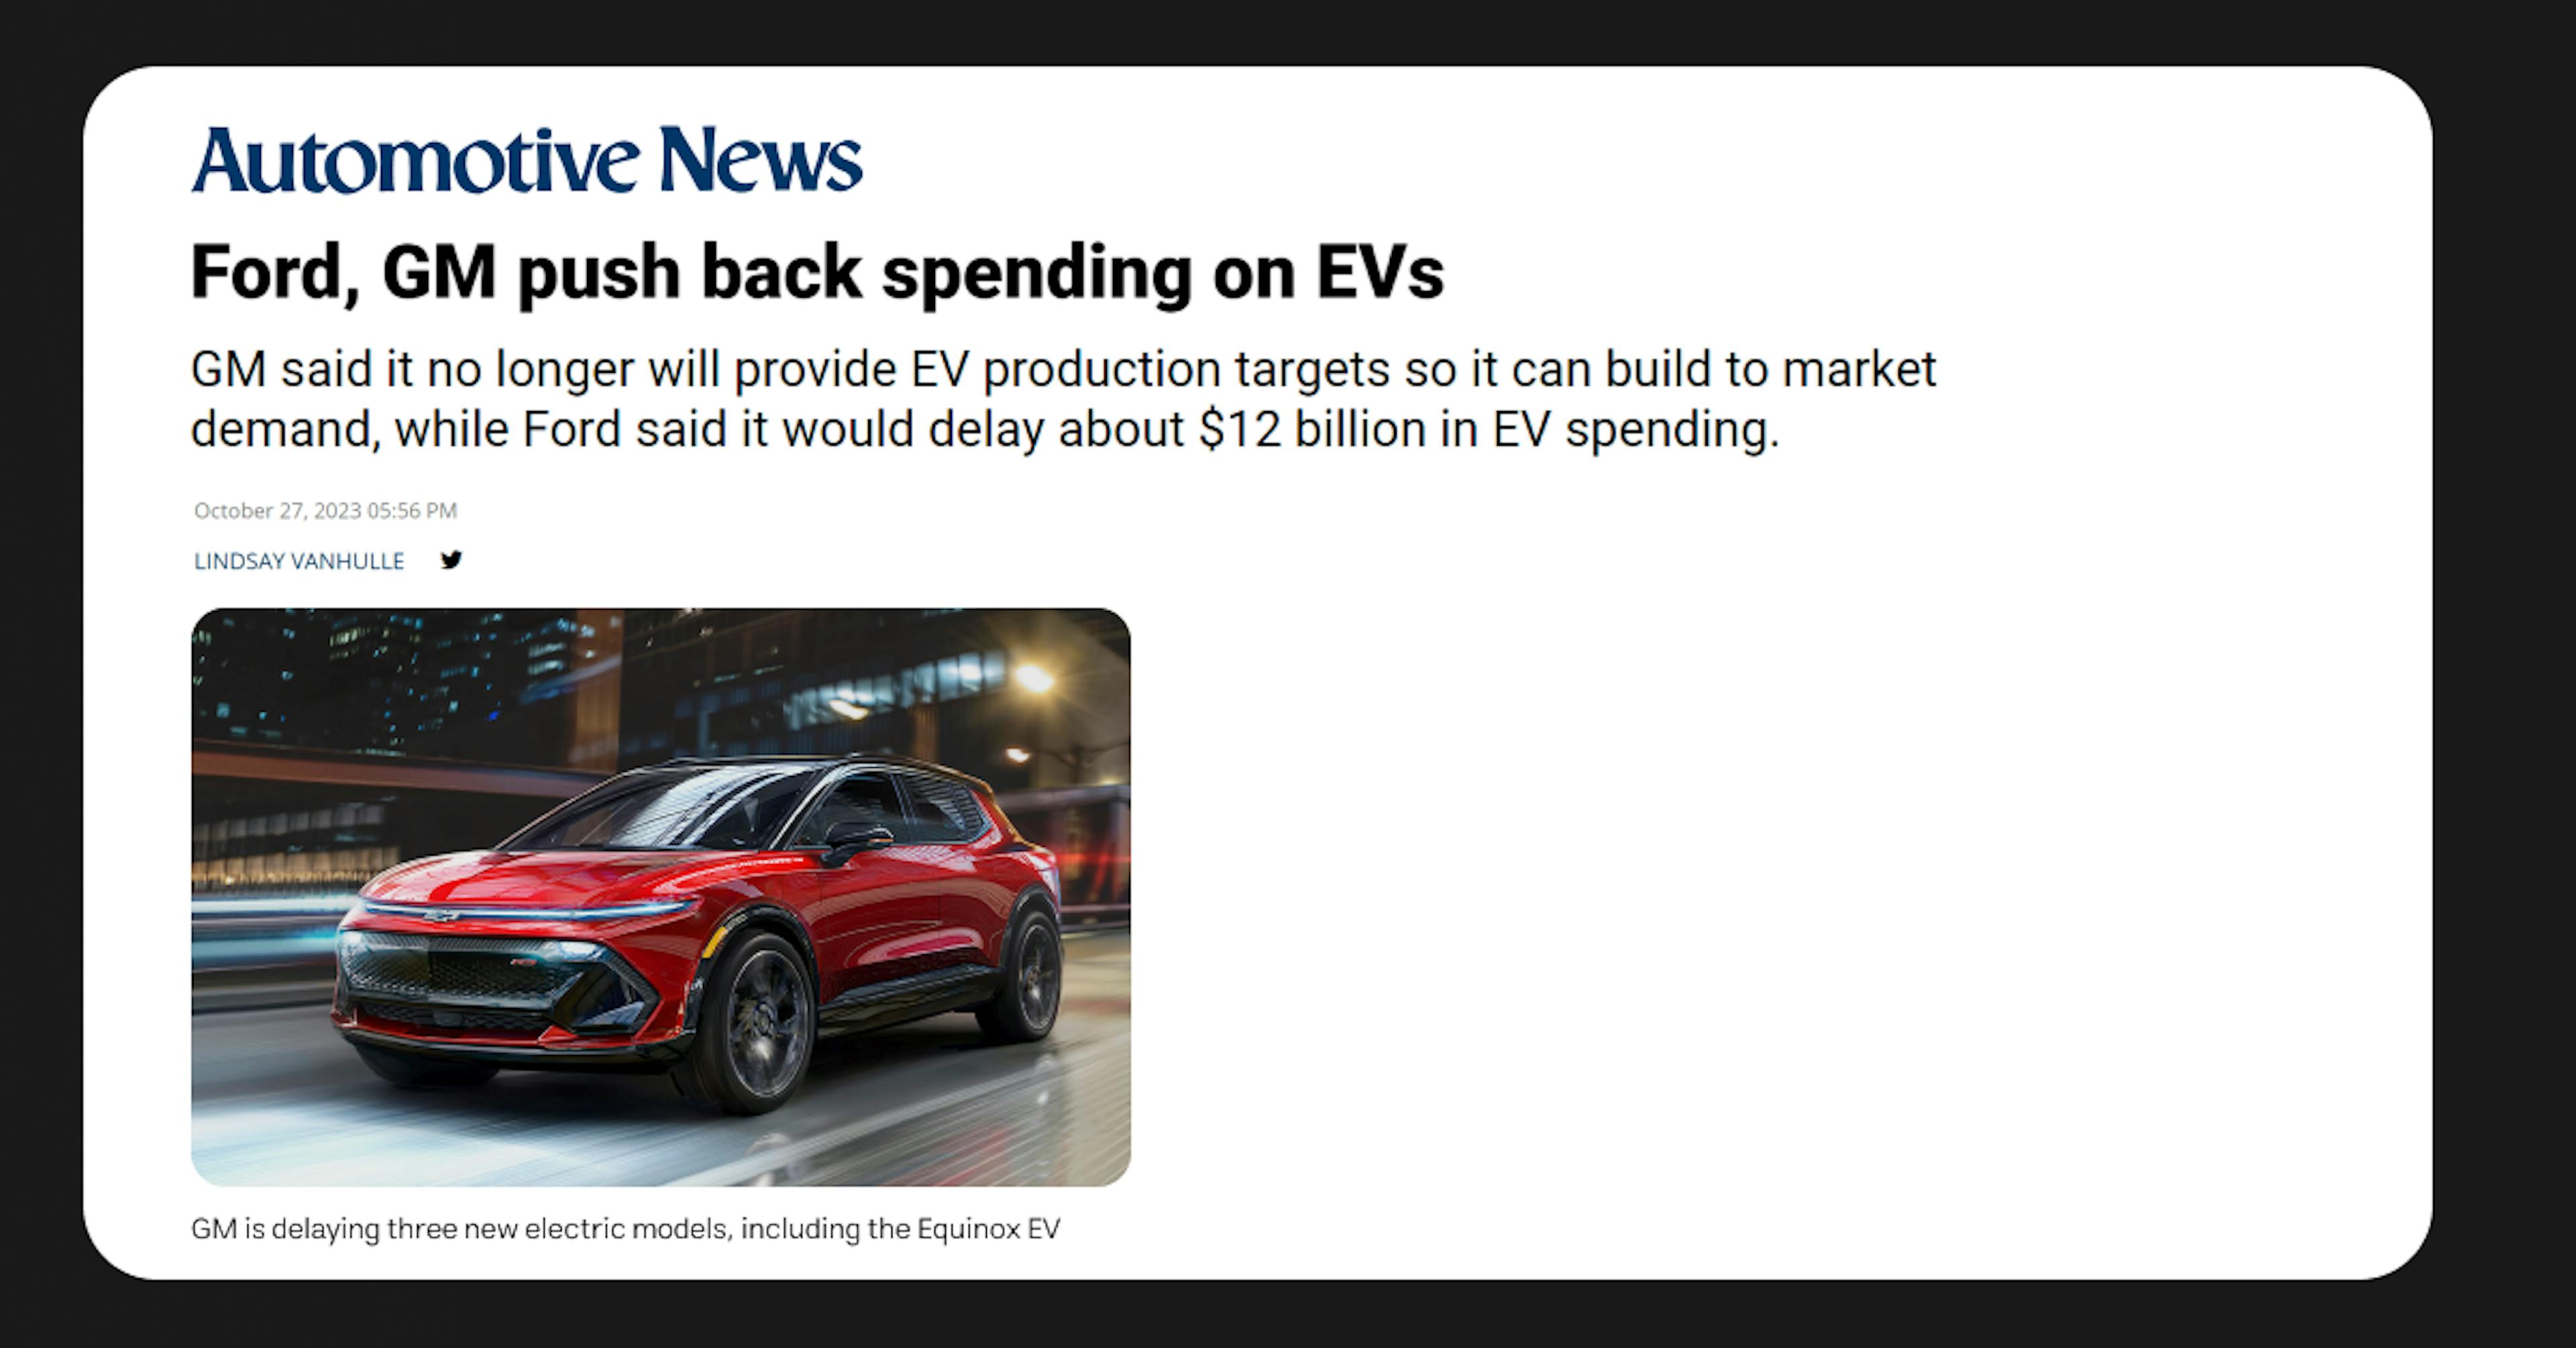 Ford et GM ont annoncé un retard dans les dépenses en véhicules électriques cette année seulement